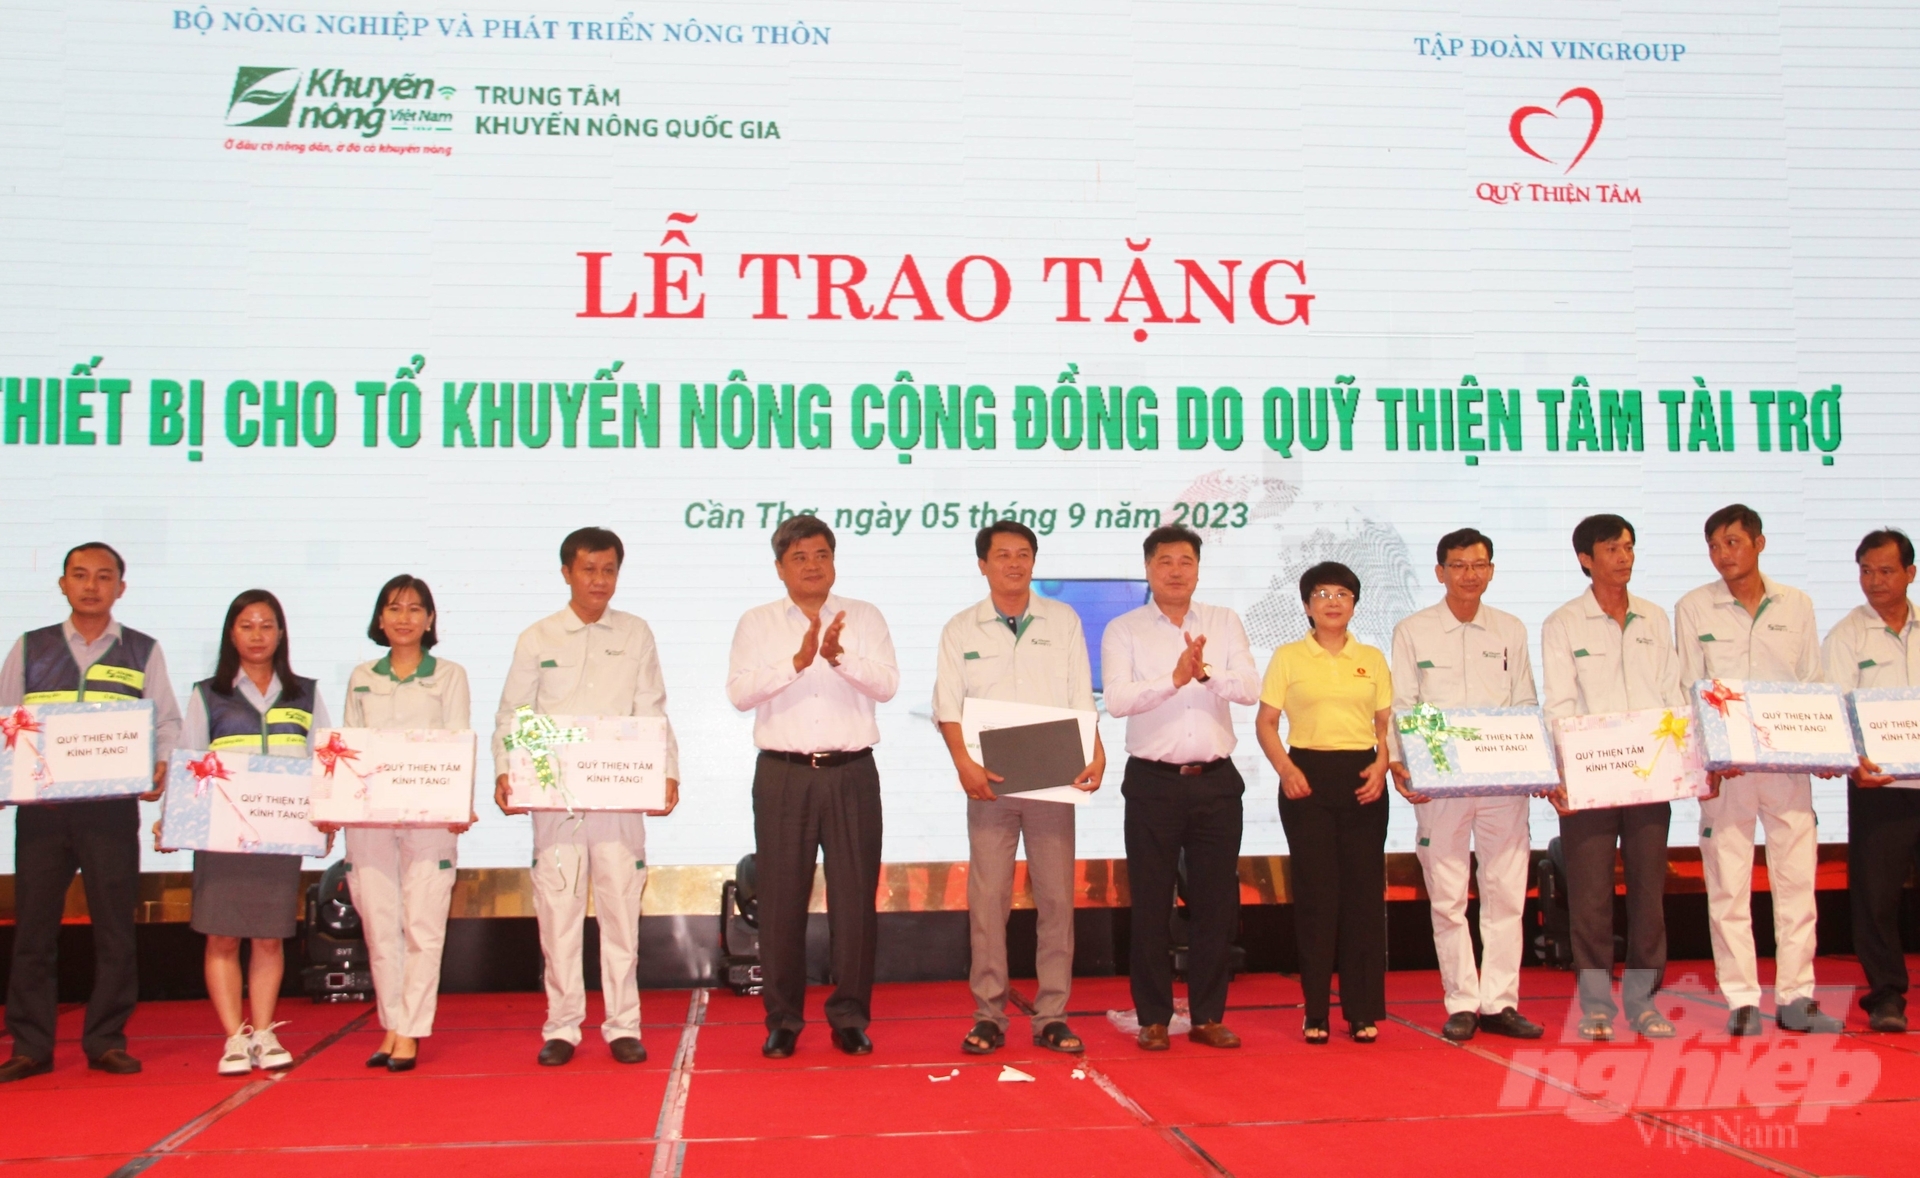 Thứ trưởng Bộ NN-PTNT Trần Thanh Nam (thứ 4 từ trái sang) trao thiết bị phục vụ công tác nghiệp vụ cho tổ khuyến nông cộng đồng do Quỹ Thiện Tâm (Tập đoàn Vingroup) tài trợ. Ảnh: Kim Anh.